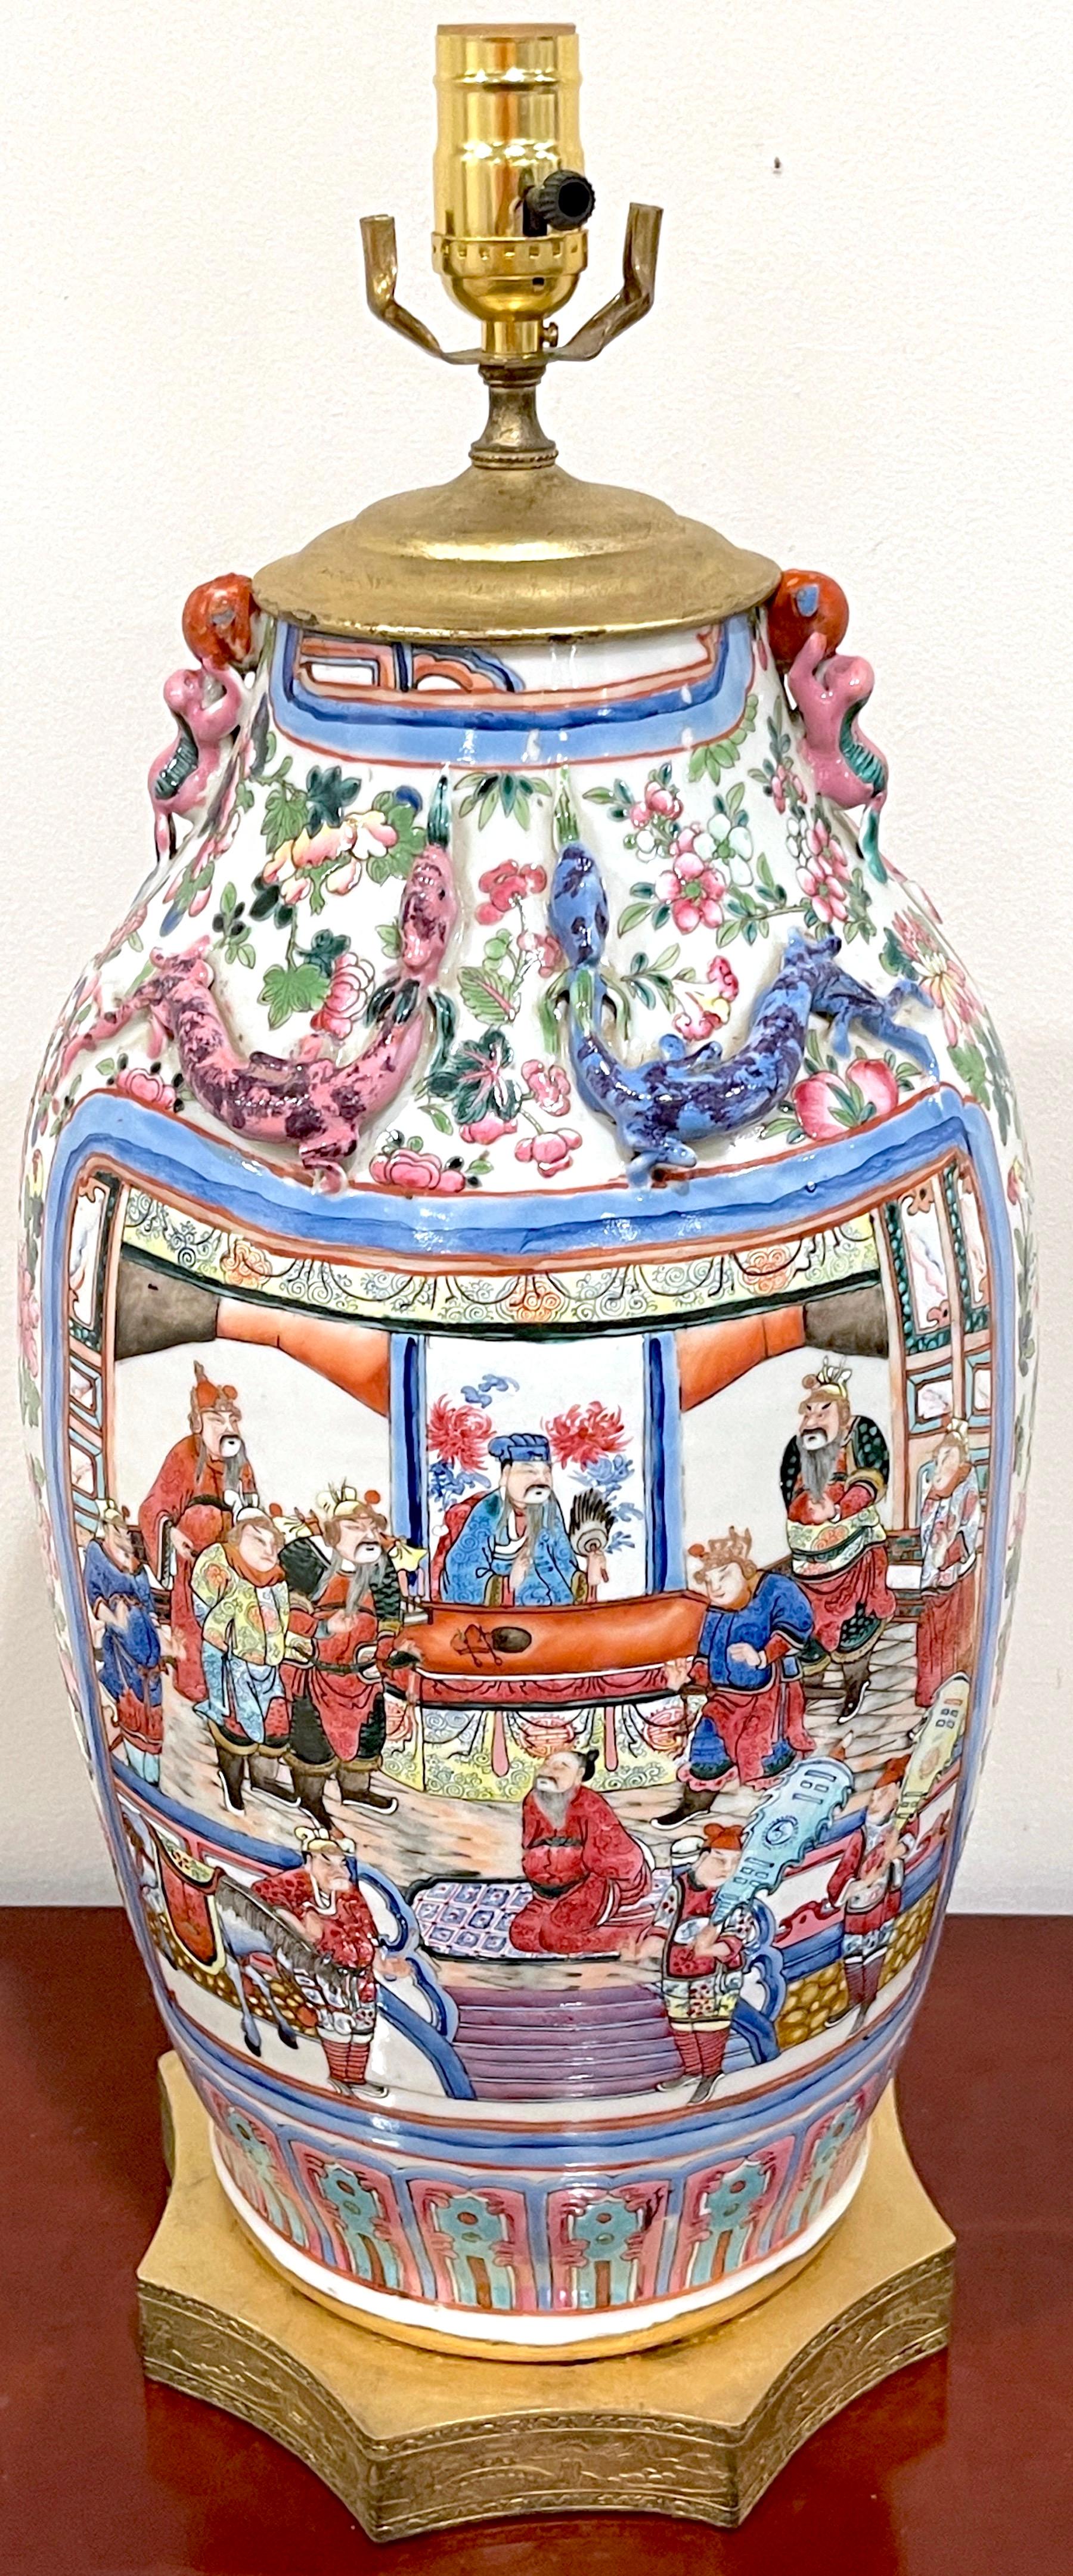 Vase famille rose d'un guerrier mandarin exporté de Chine, converti en lampe
Le vase en porcelaine, Chine vers 1860
Montures et lampes dorées États-Unis, vers 1925

Magnifique vase d'exportation chinoise à famille rose et à guerrier mandarin,  à